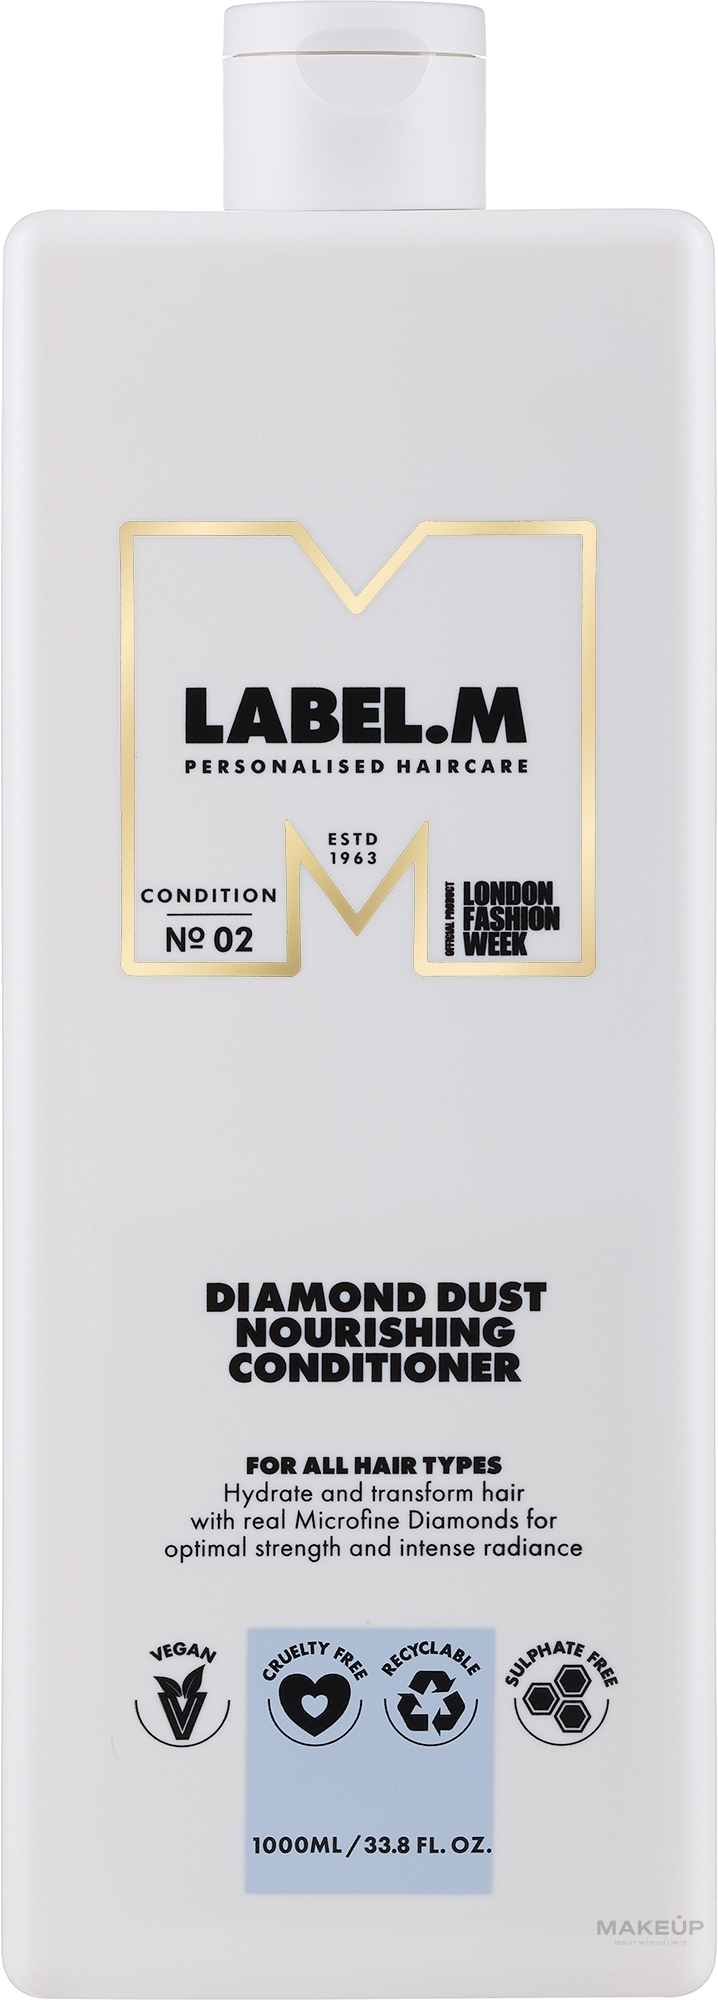 Живильний кондиціонер для волосся - Label.m Diamond Dust Nourishing Conditioner — фото 1000ml